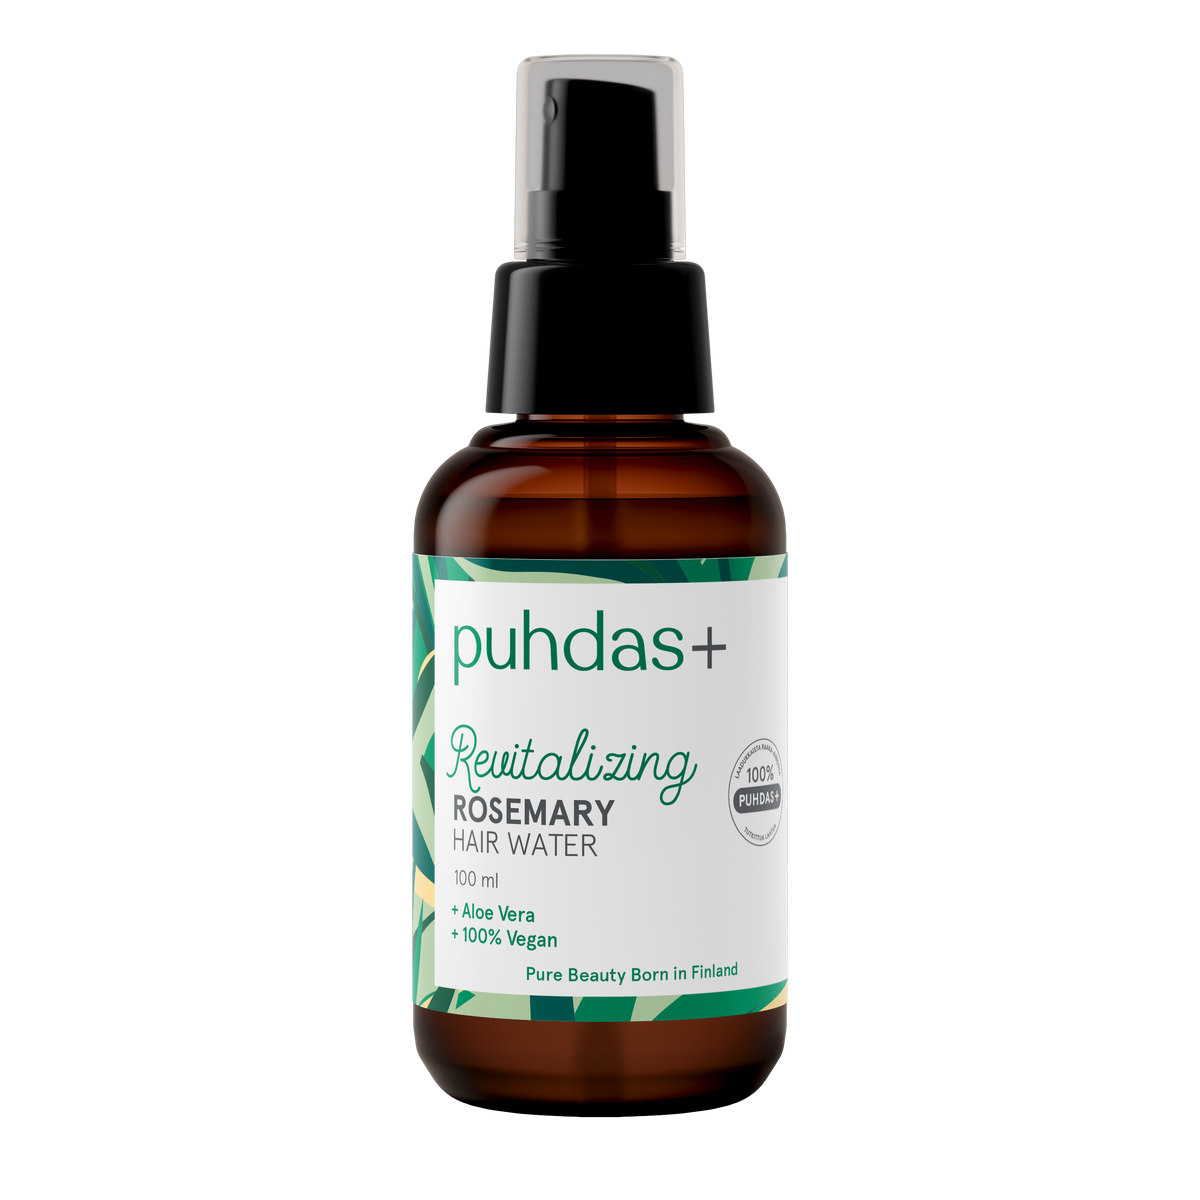 Puhdas+ Revitalizing Rosemary Hair Water - Rosmariini hiusvesi 100 ml